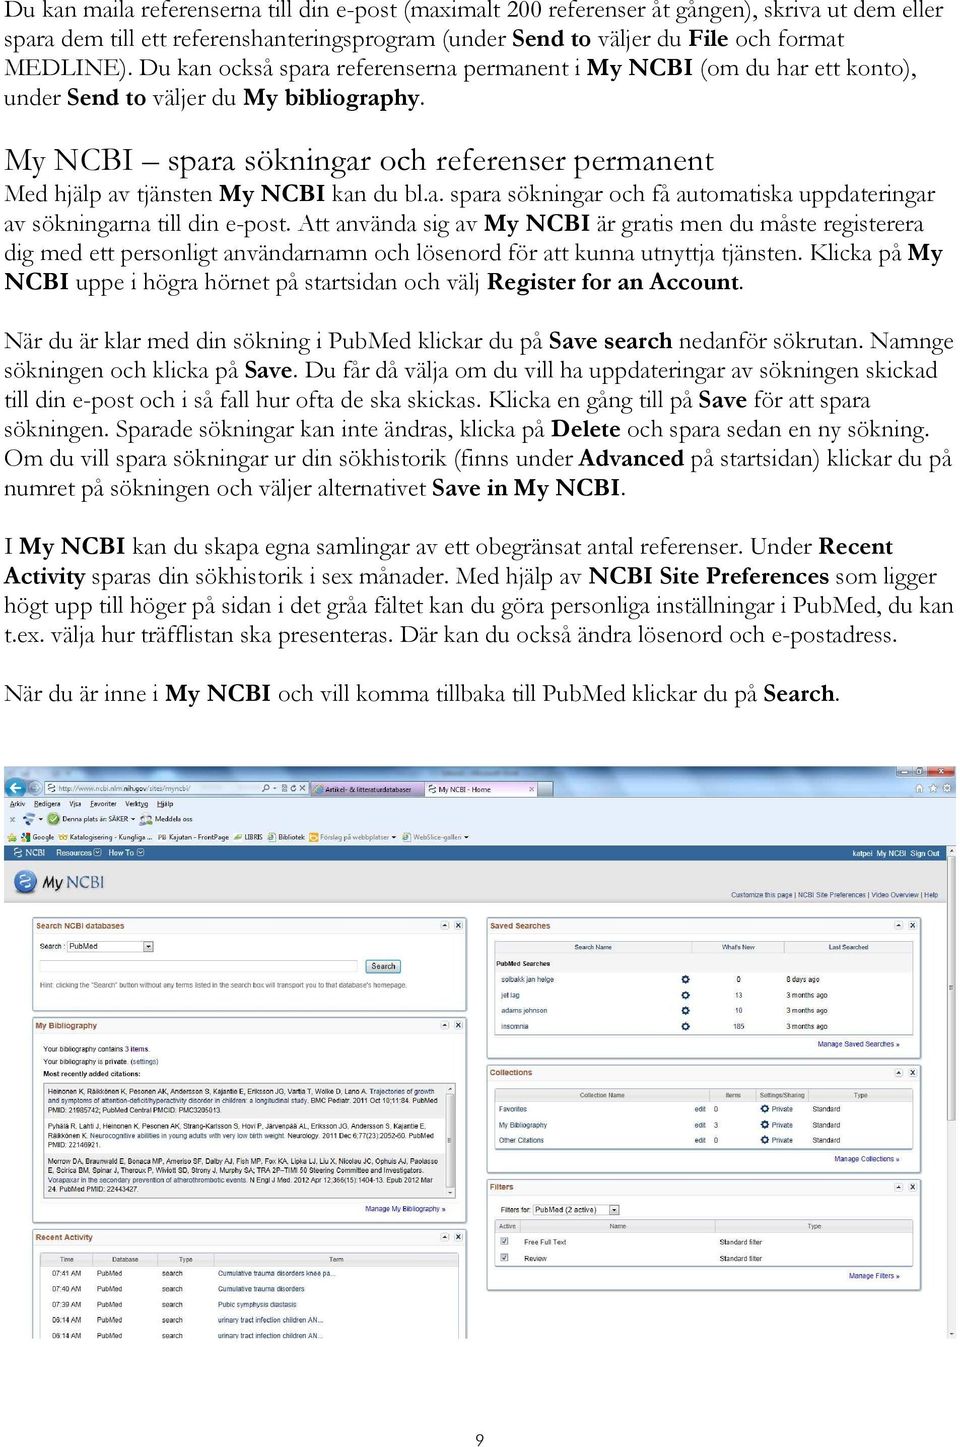 My NCBI spara sökningar och referenser permanent Med hjälp av tjänsten My NCBI kan du bl.a. spara sökningar och få automatiska uppdateringar av sökningarna till din e-post.